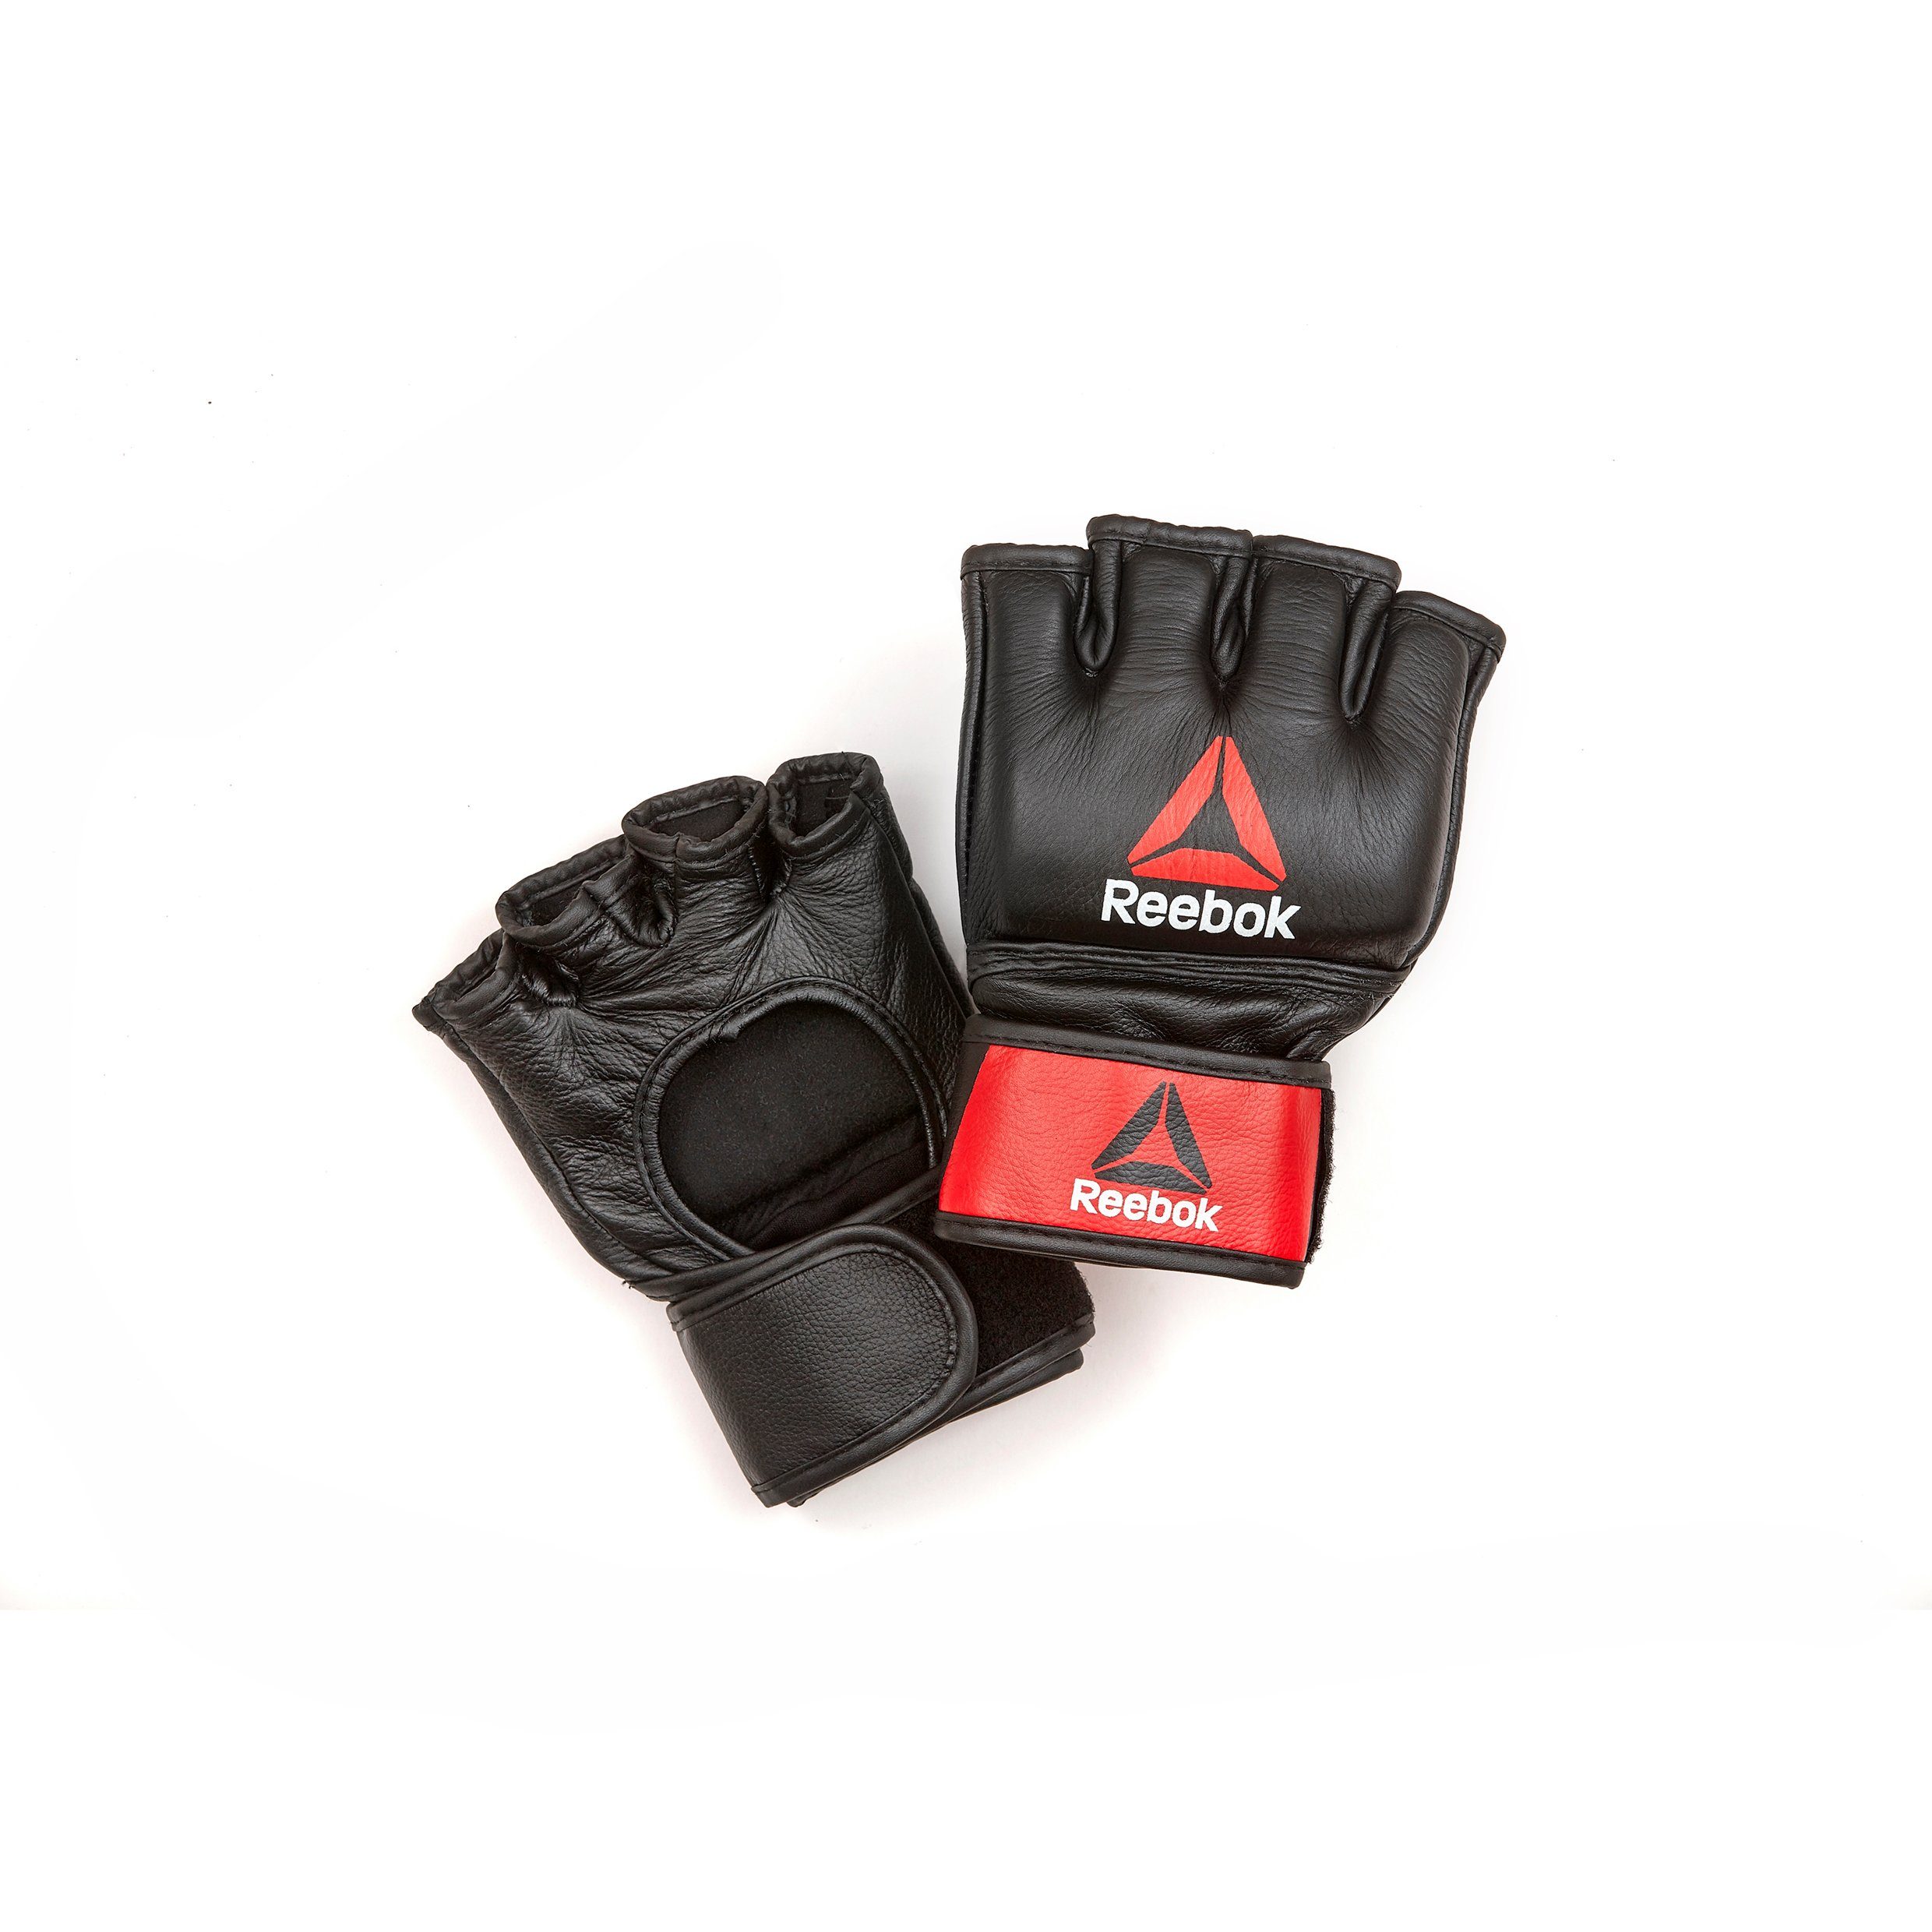 Reebok MMA-Handschuhe Reebok MMA Handschuhe Leder, in S, M, L und XL